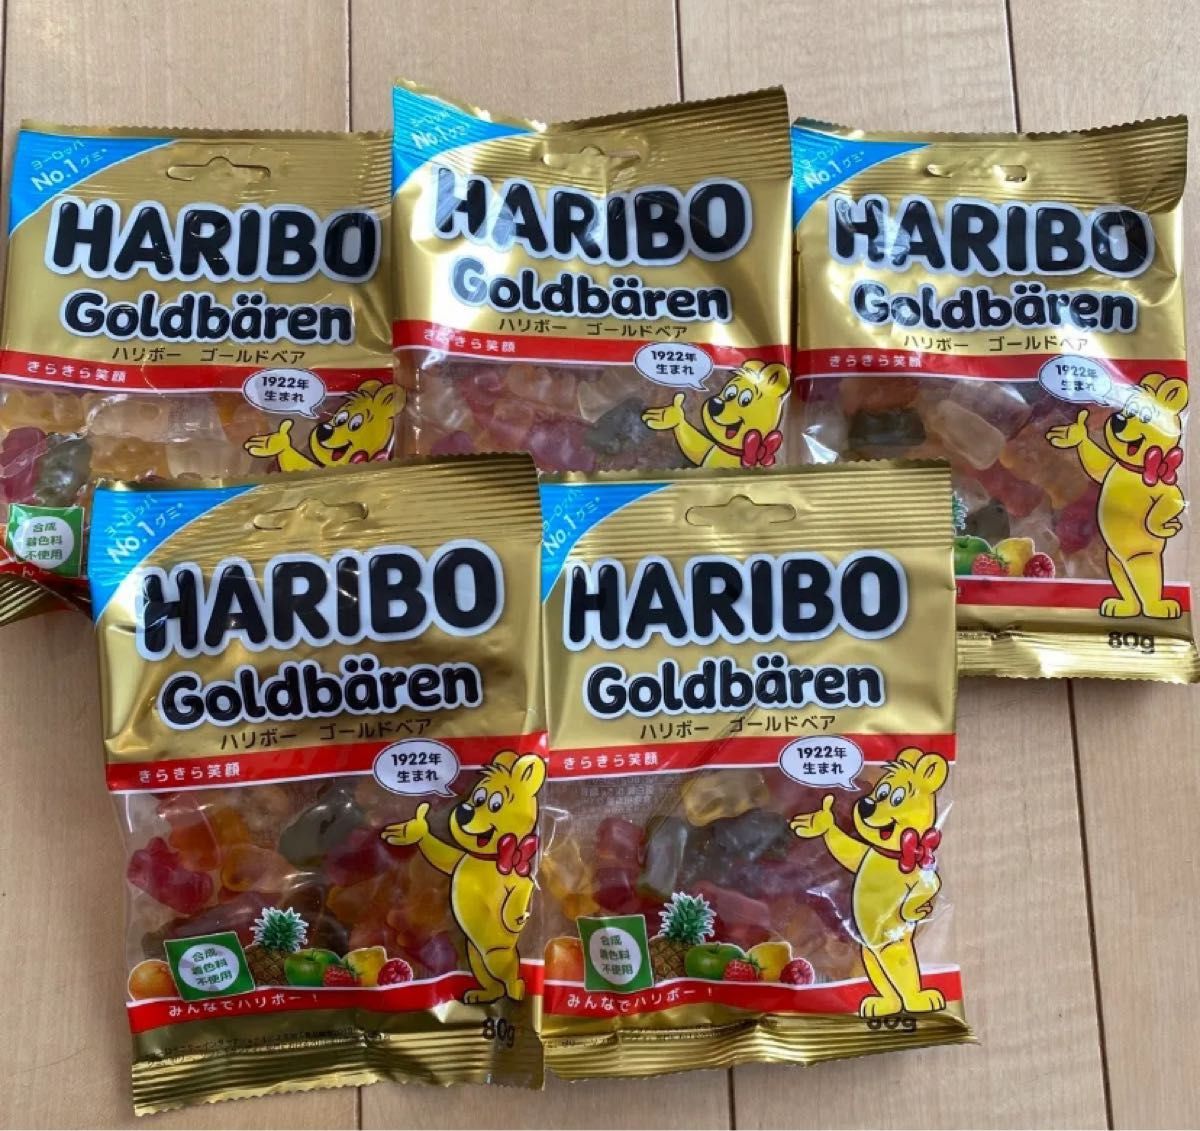 【5個】HARIBO GOLDBEAR ハリボーグミ ゴールドベア 80g